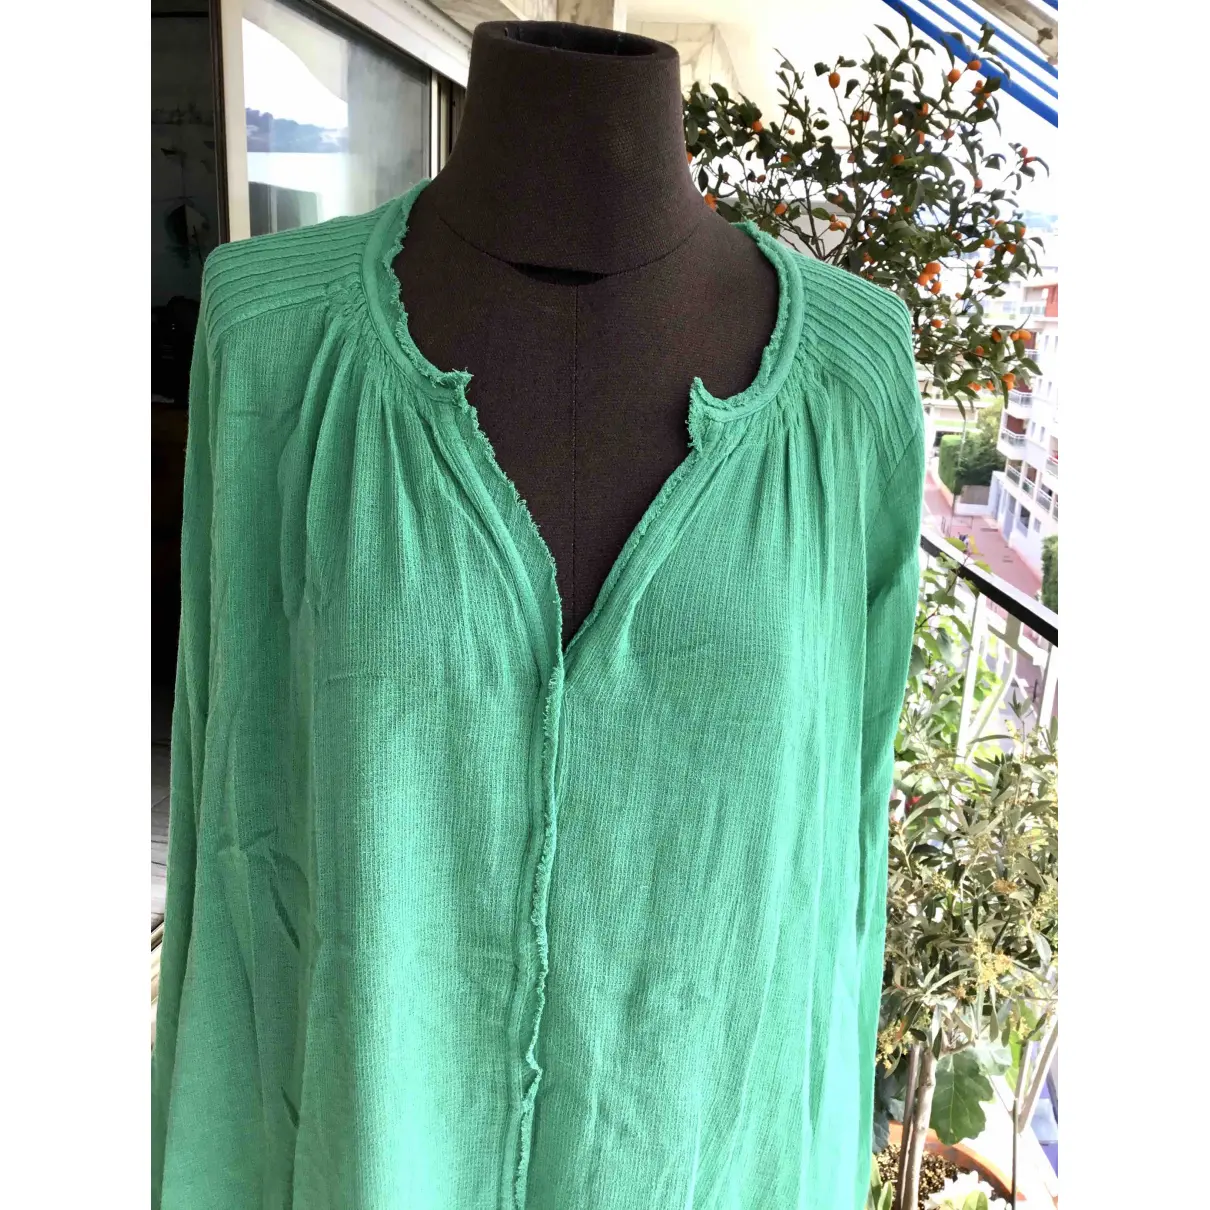 Buy Ba&sh Spring Summer 2020 blouse online